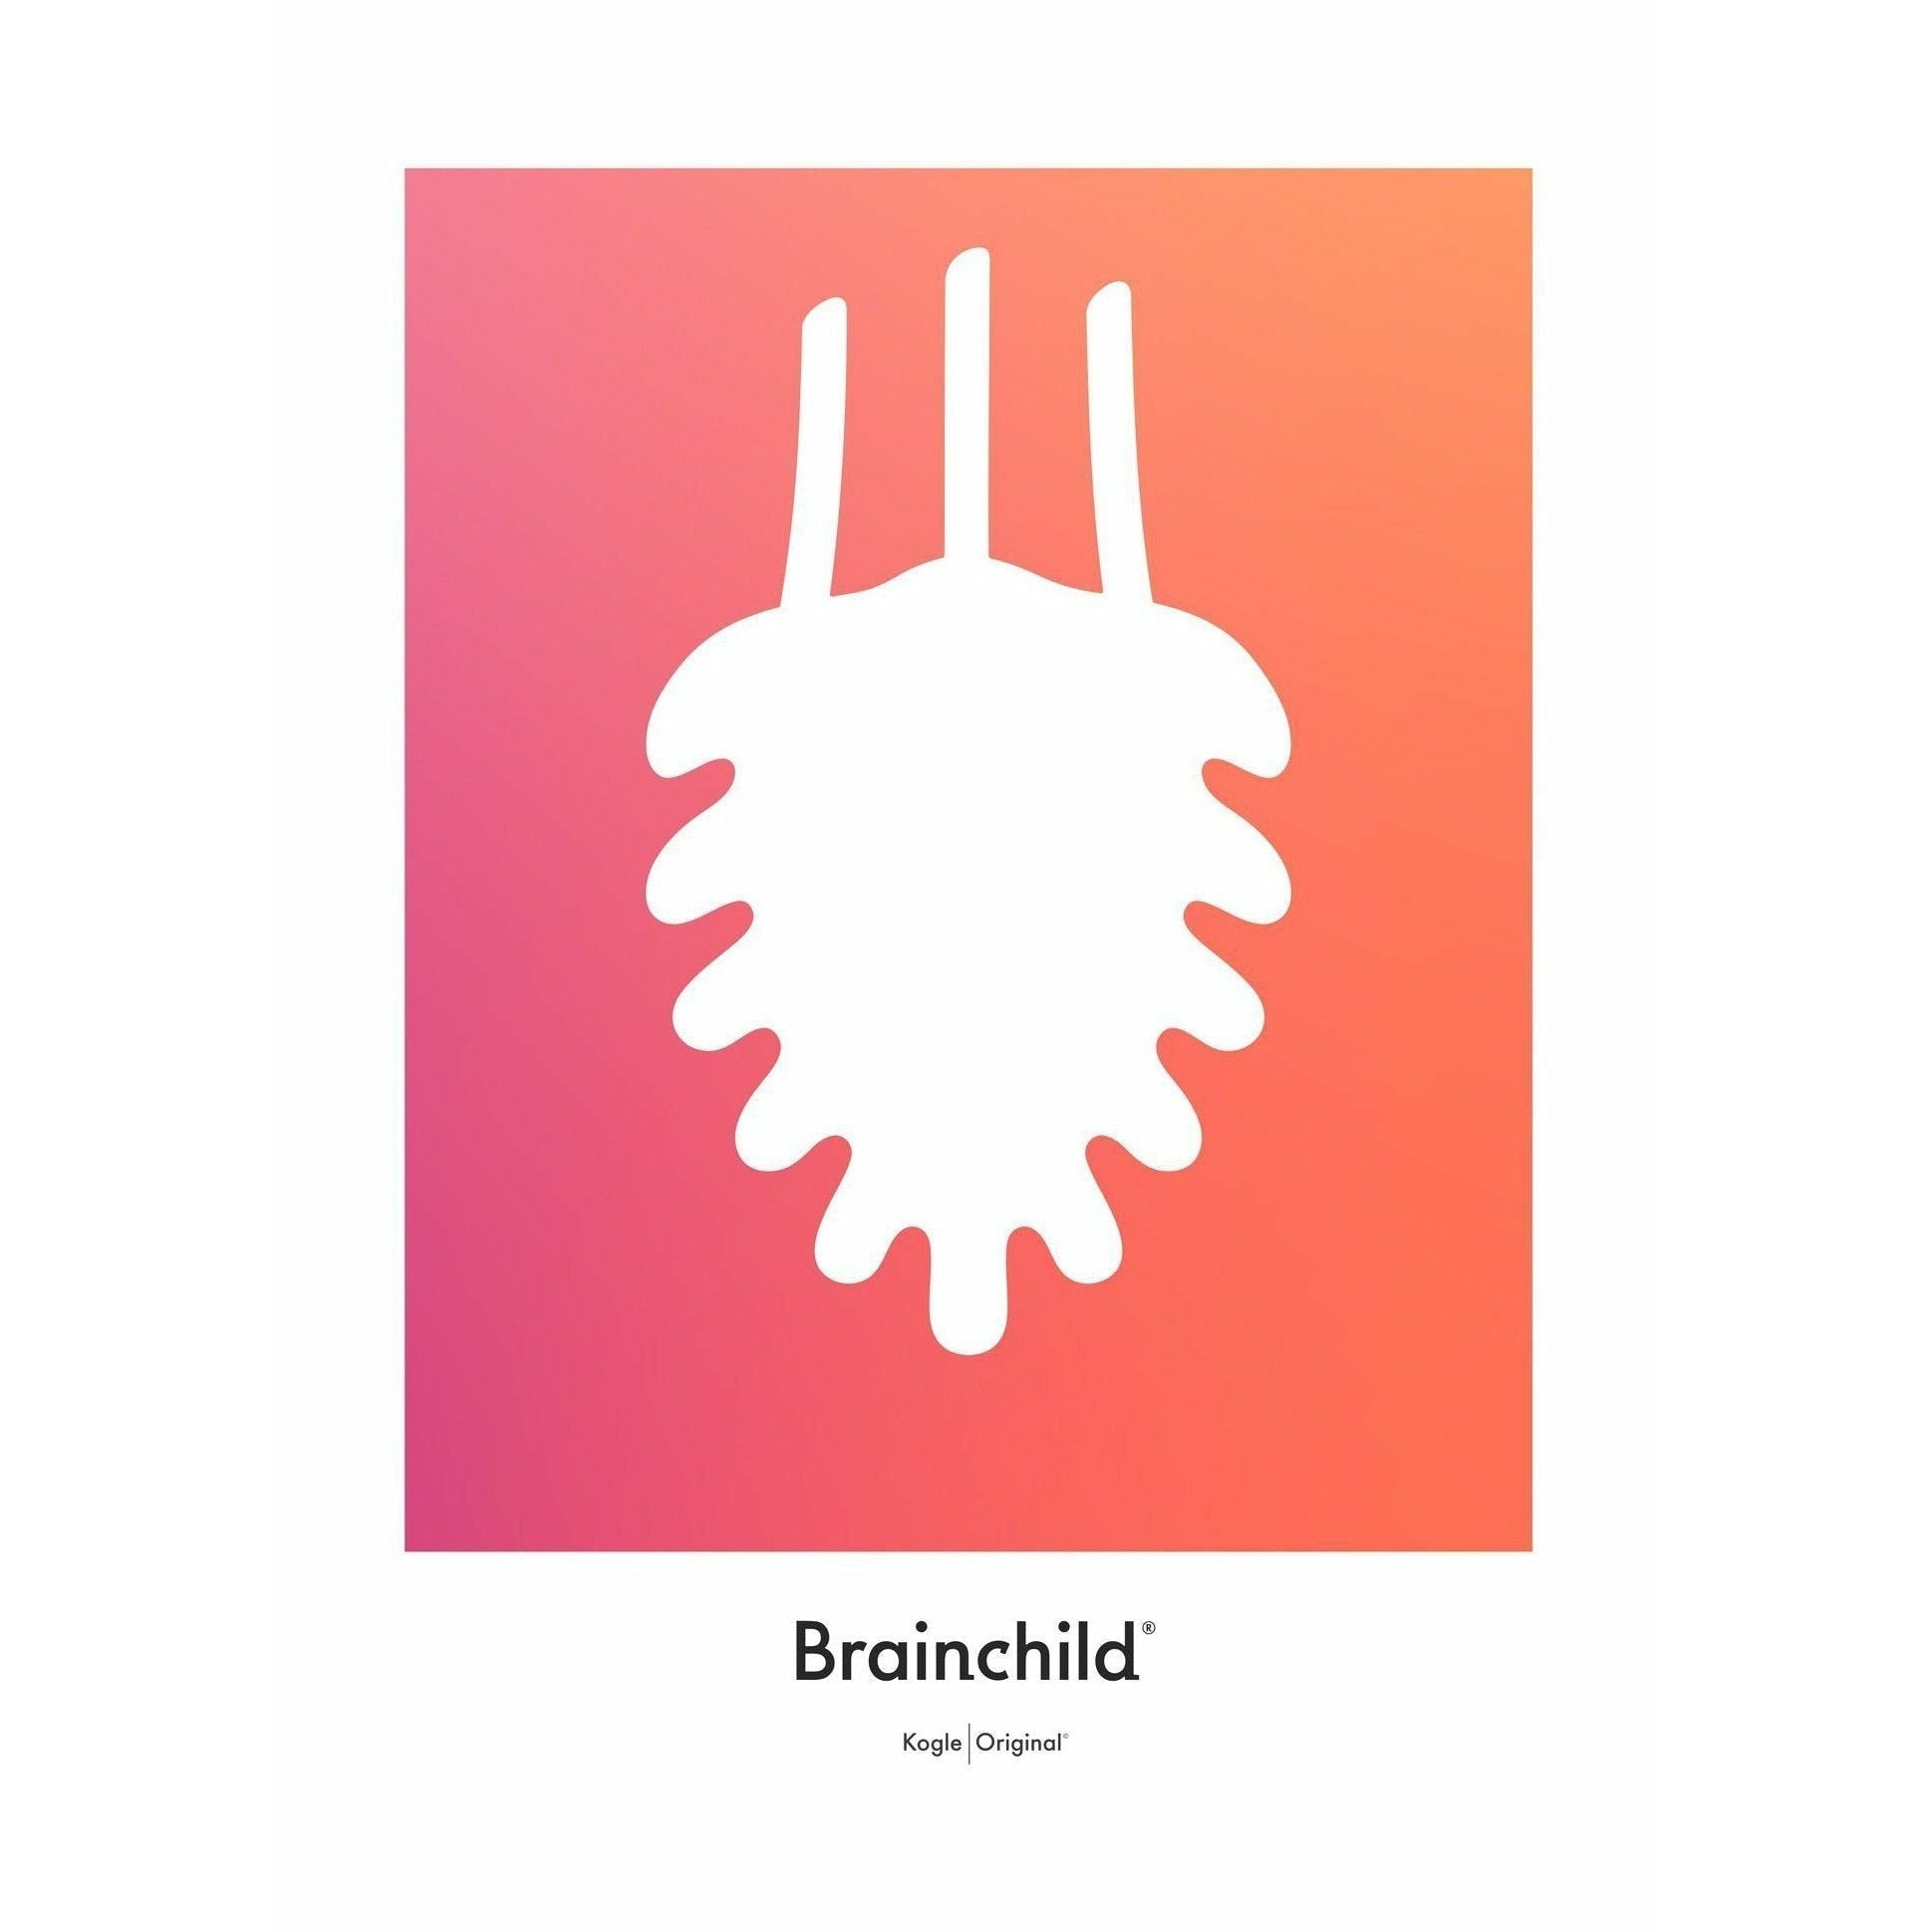 Plakát ikony borovicového kuželu Brainchild bez rámu A5, oranžová